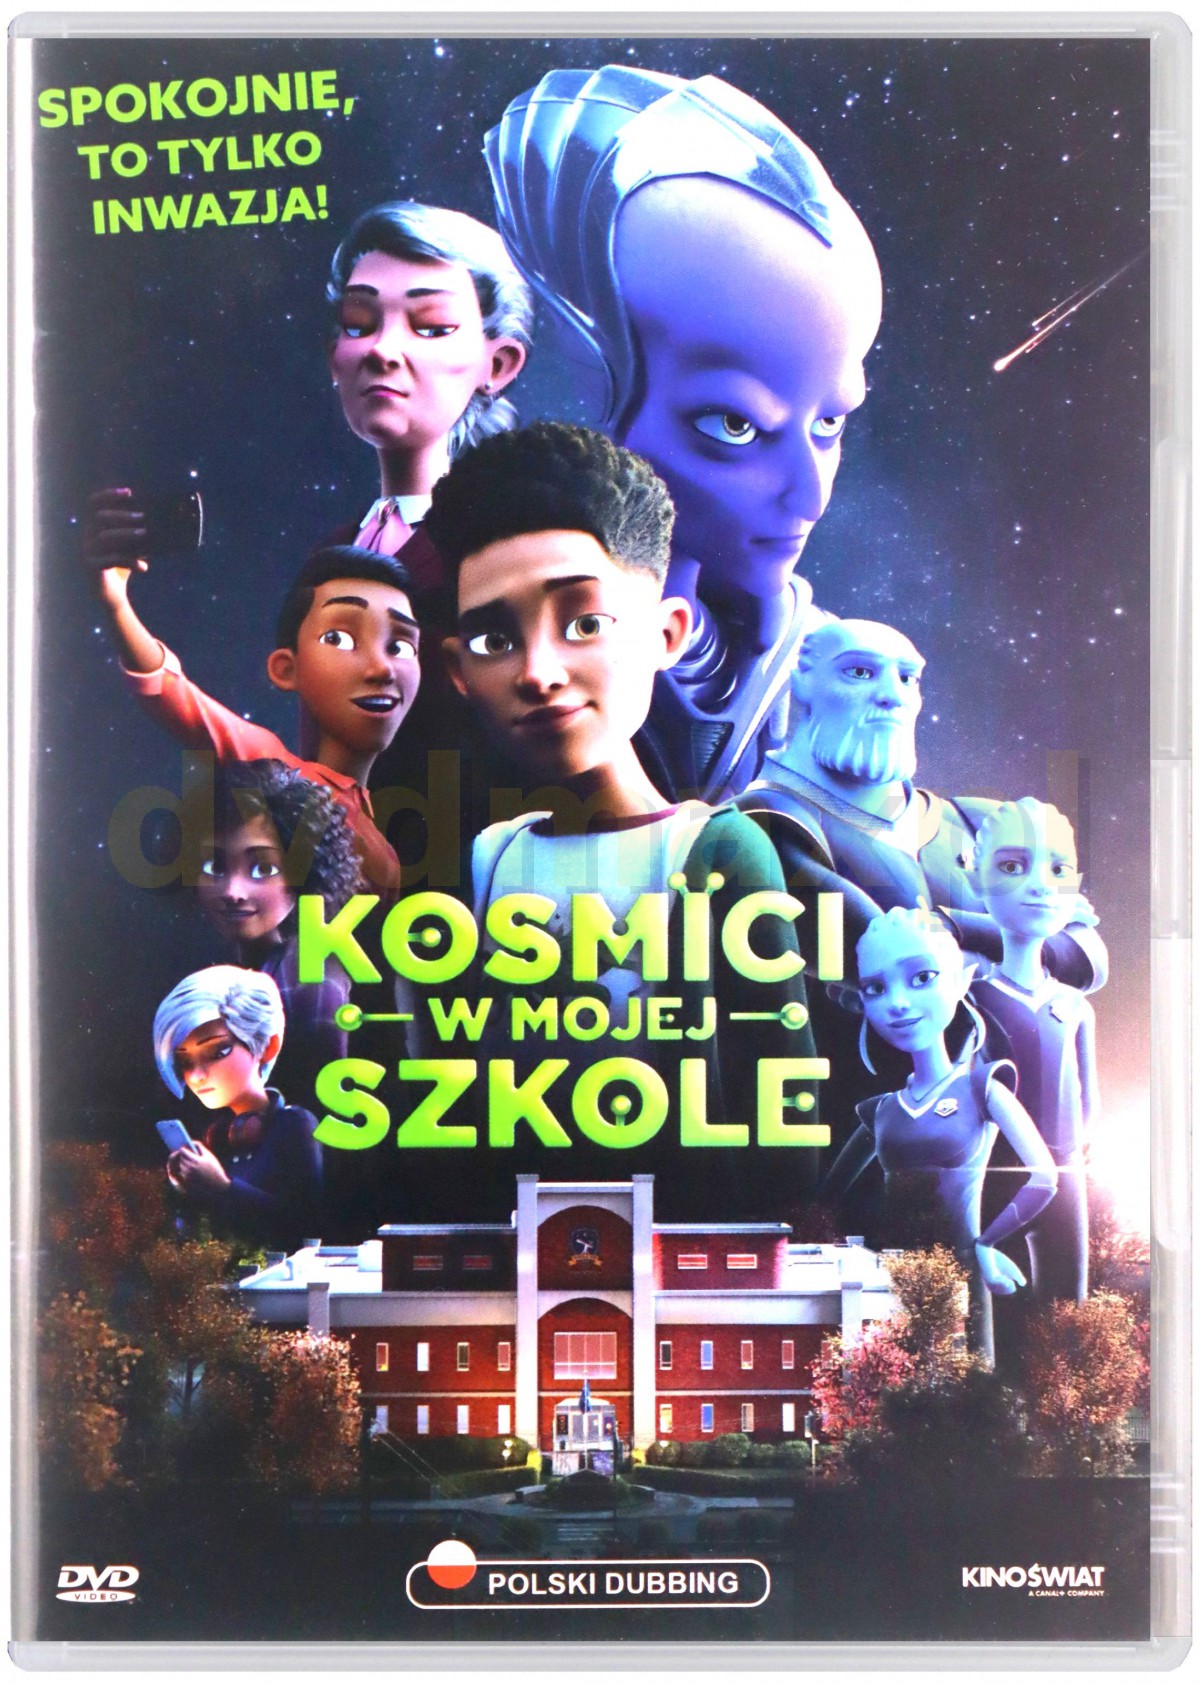 okładka filmu na DVD pod tytułem Kosmici w mojej szkole